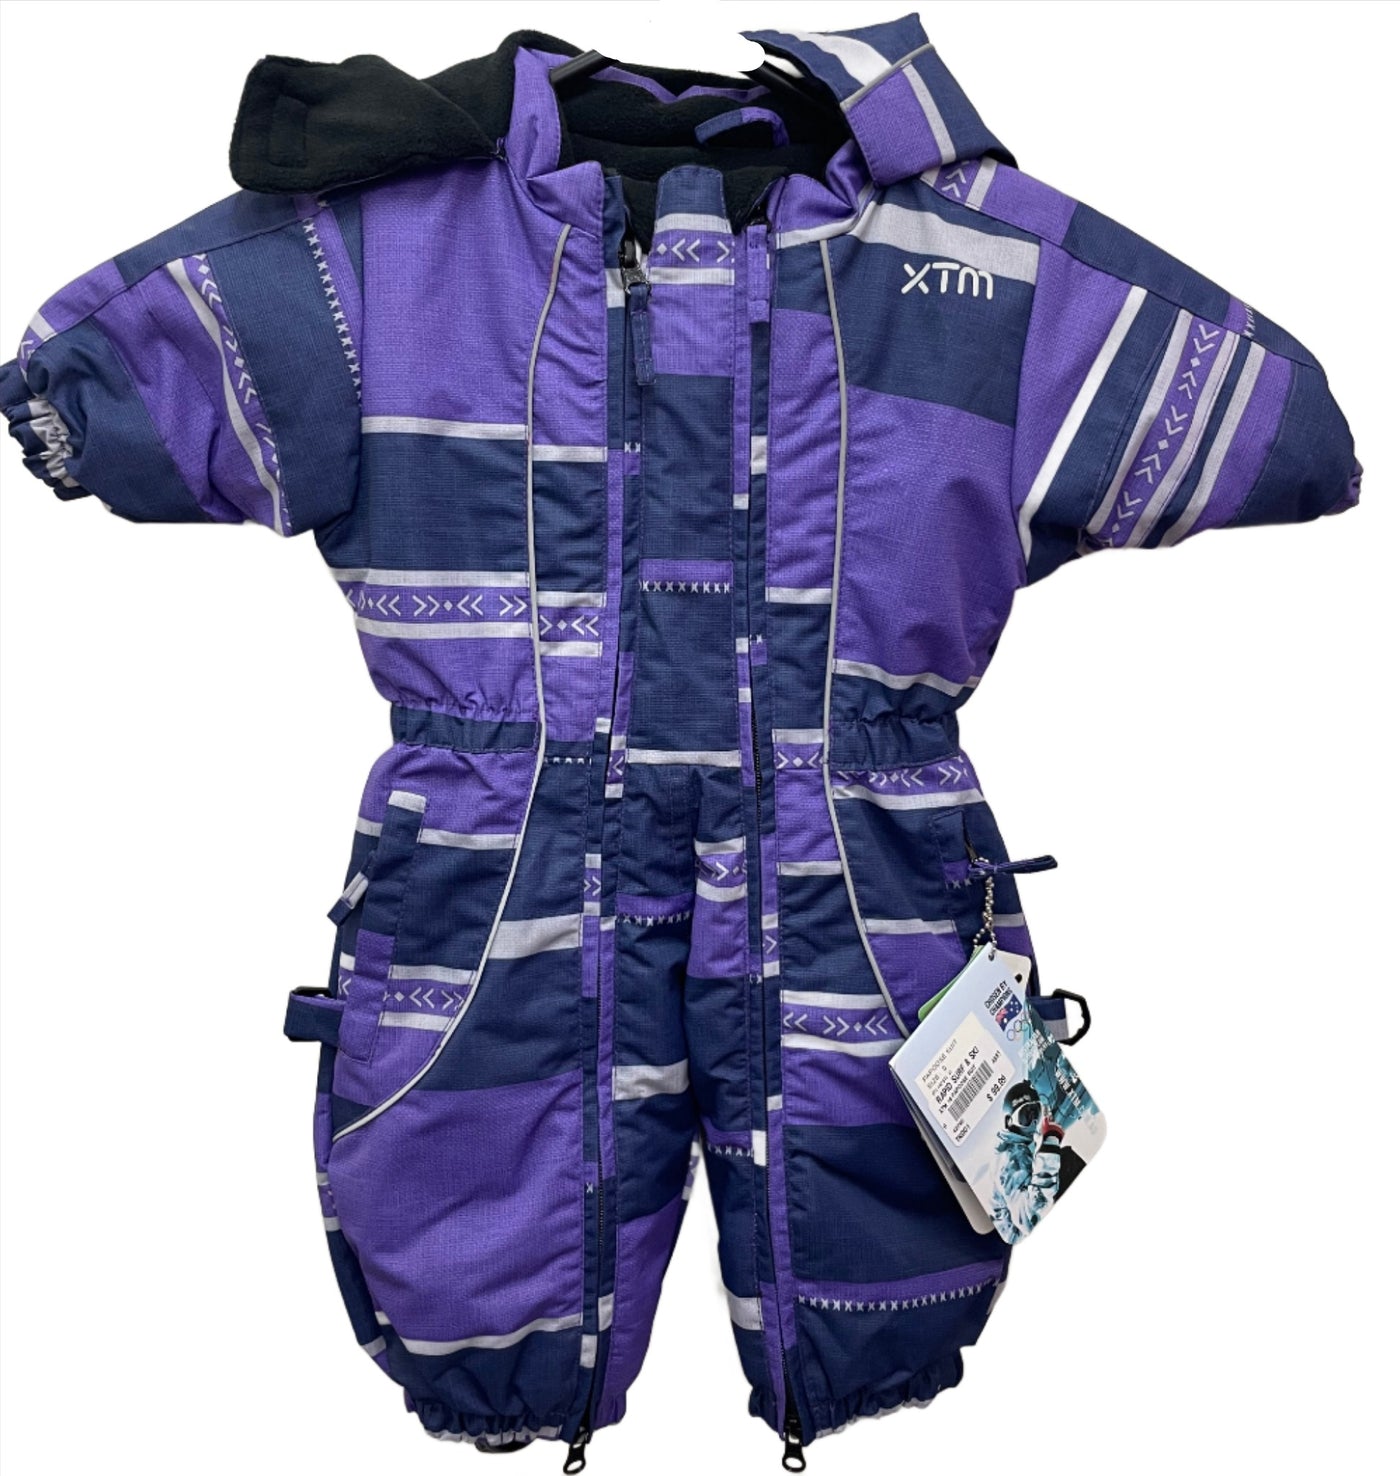 XTM Papoose Kids Snow Suit - Purple